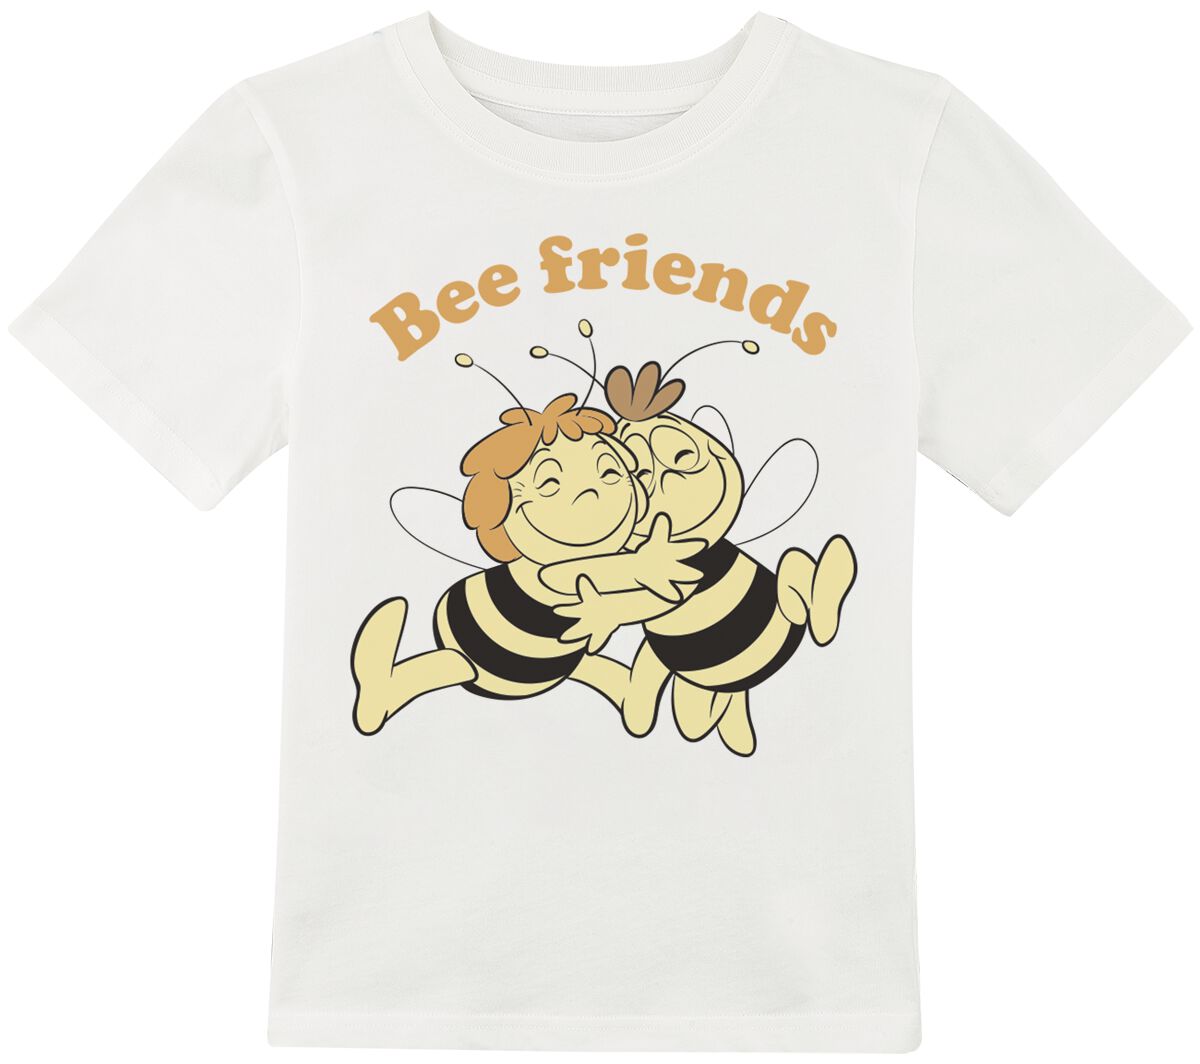 Die Biene Maja T-Shirt für Kinder - Kids - Bee Friends - für Mädchen - altweiß  - EMP exklusives Merchandise!